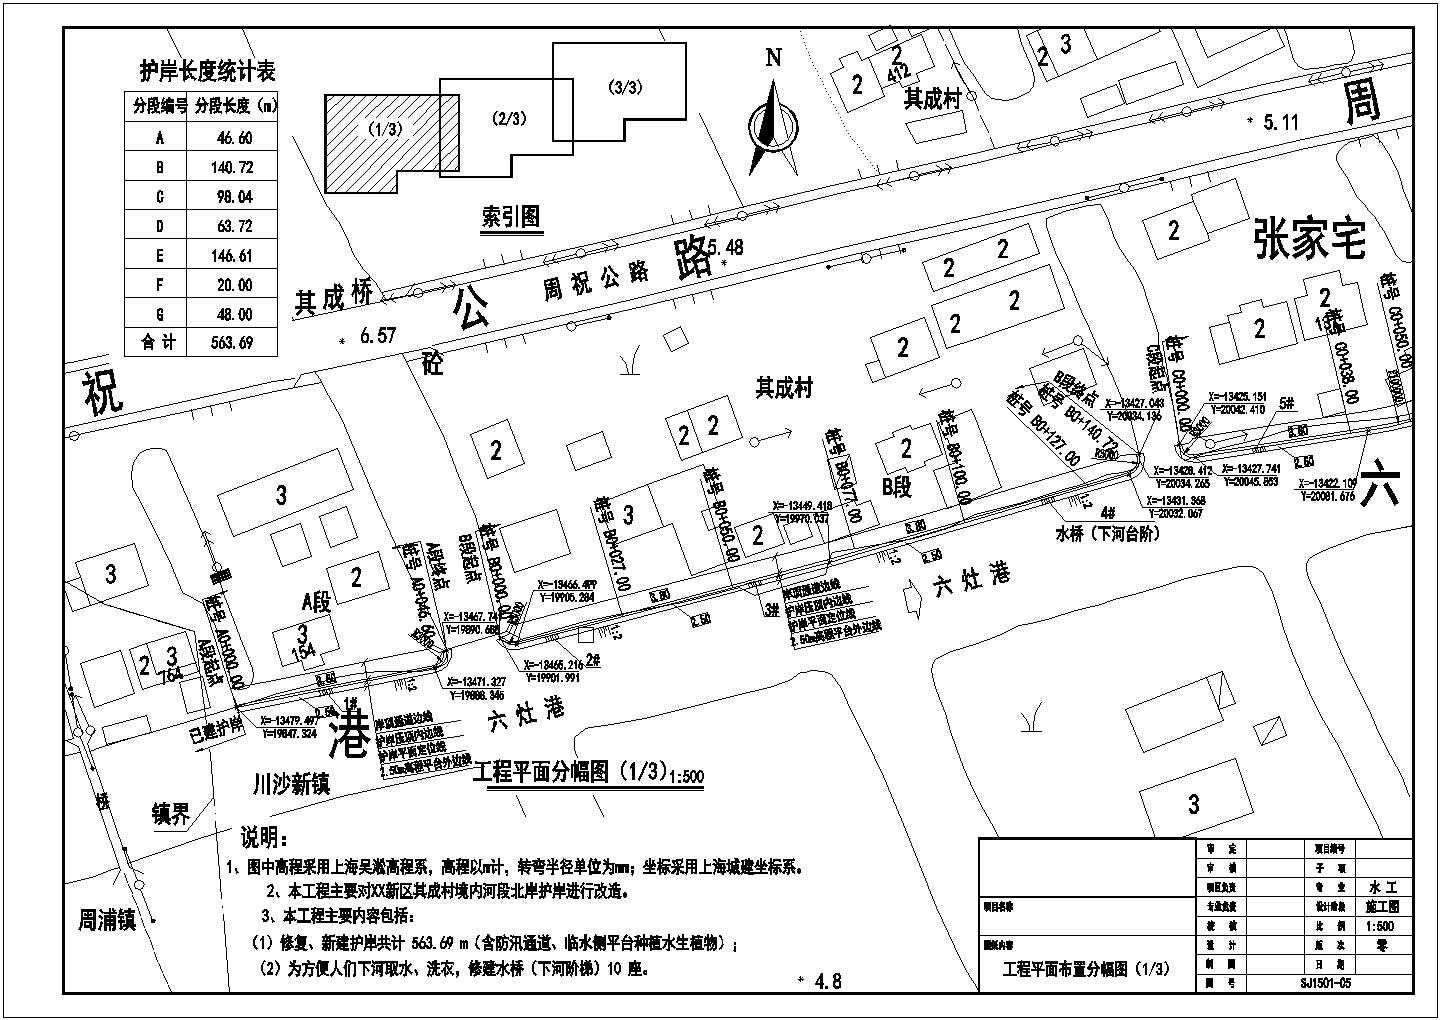 上海河道护岸维修改造工程施工设计全套cad图